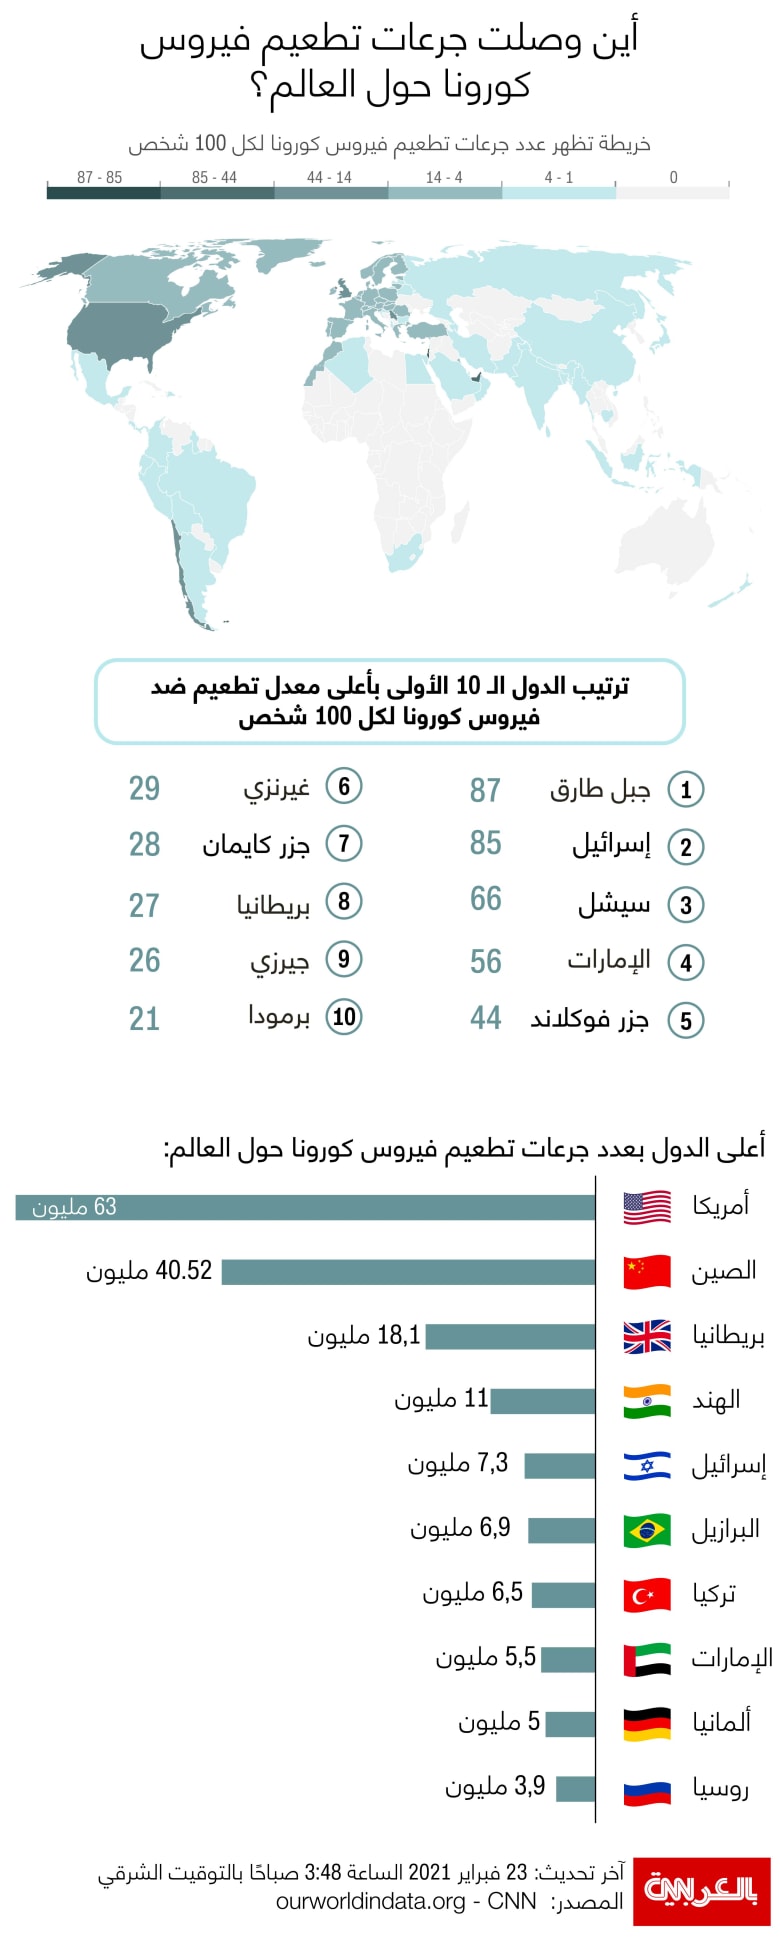 اللقاح عدد الذين السعودية اخذوا في الأردن يسعى